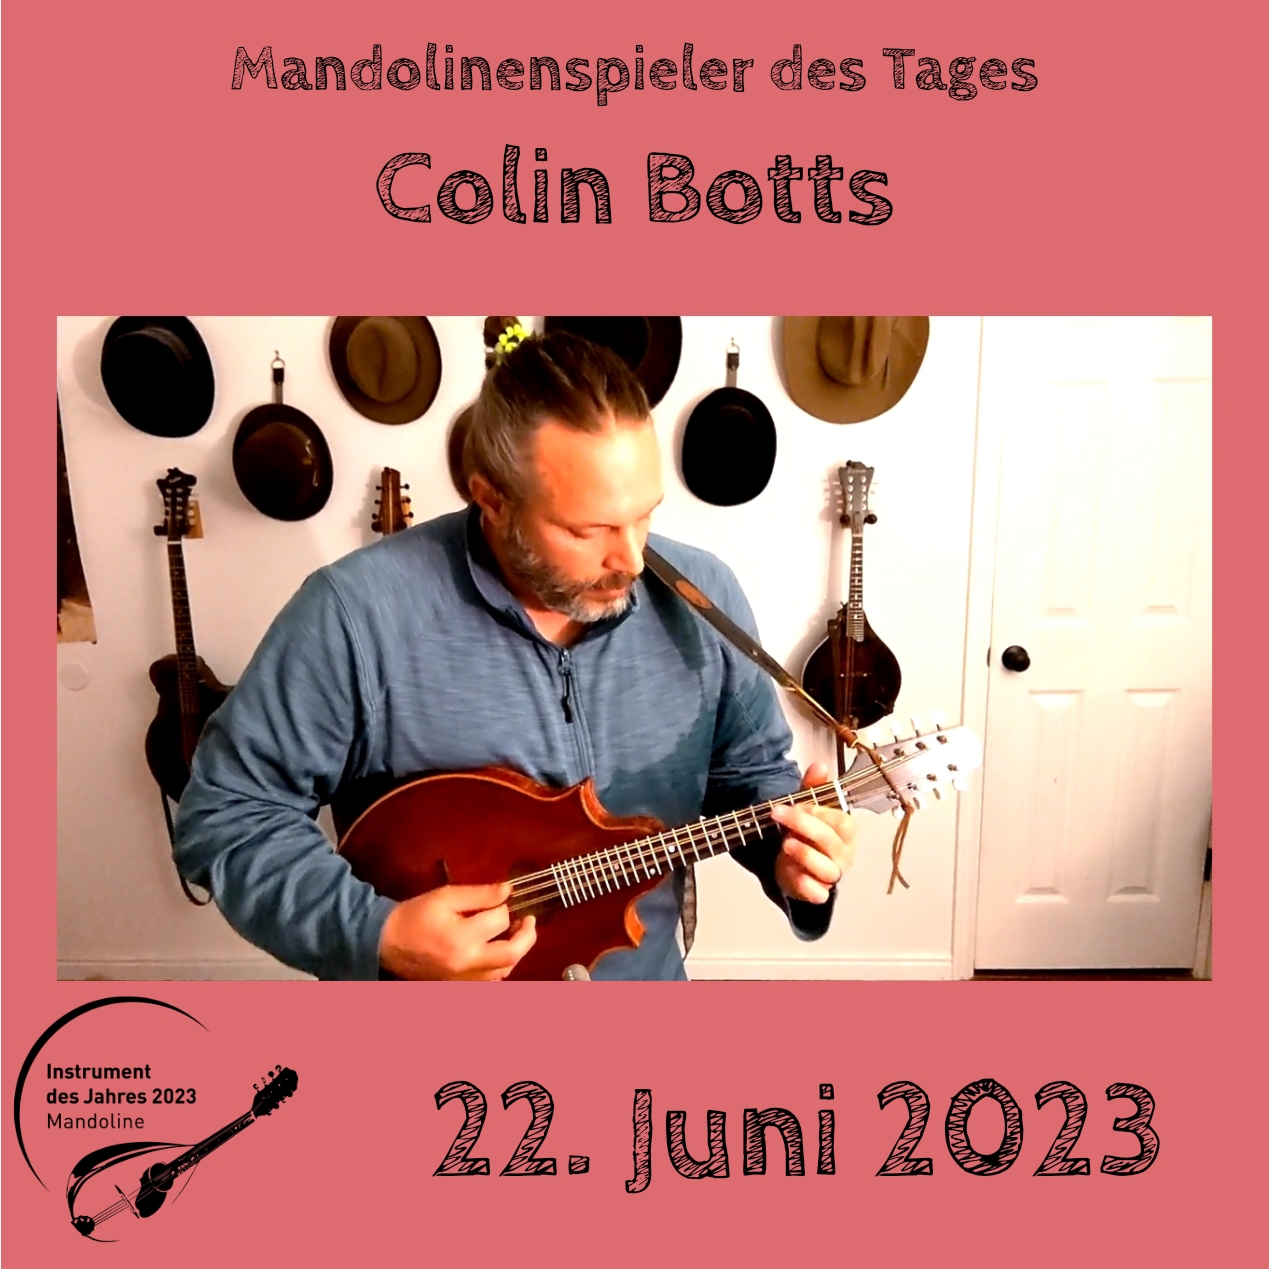 22. Juni - Colin Botts Mandoline Instrument des Jahres 2023 Mandolinenspieler Mandolinenspielerin des Tages